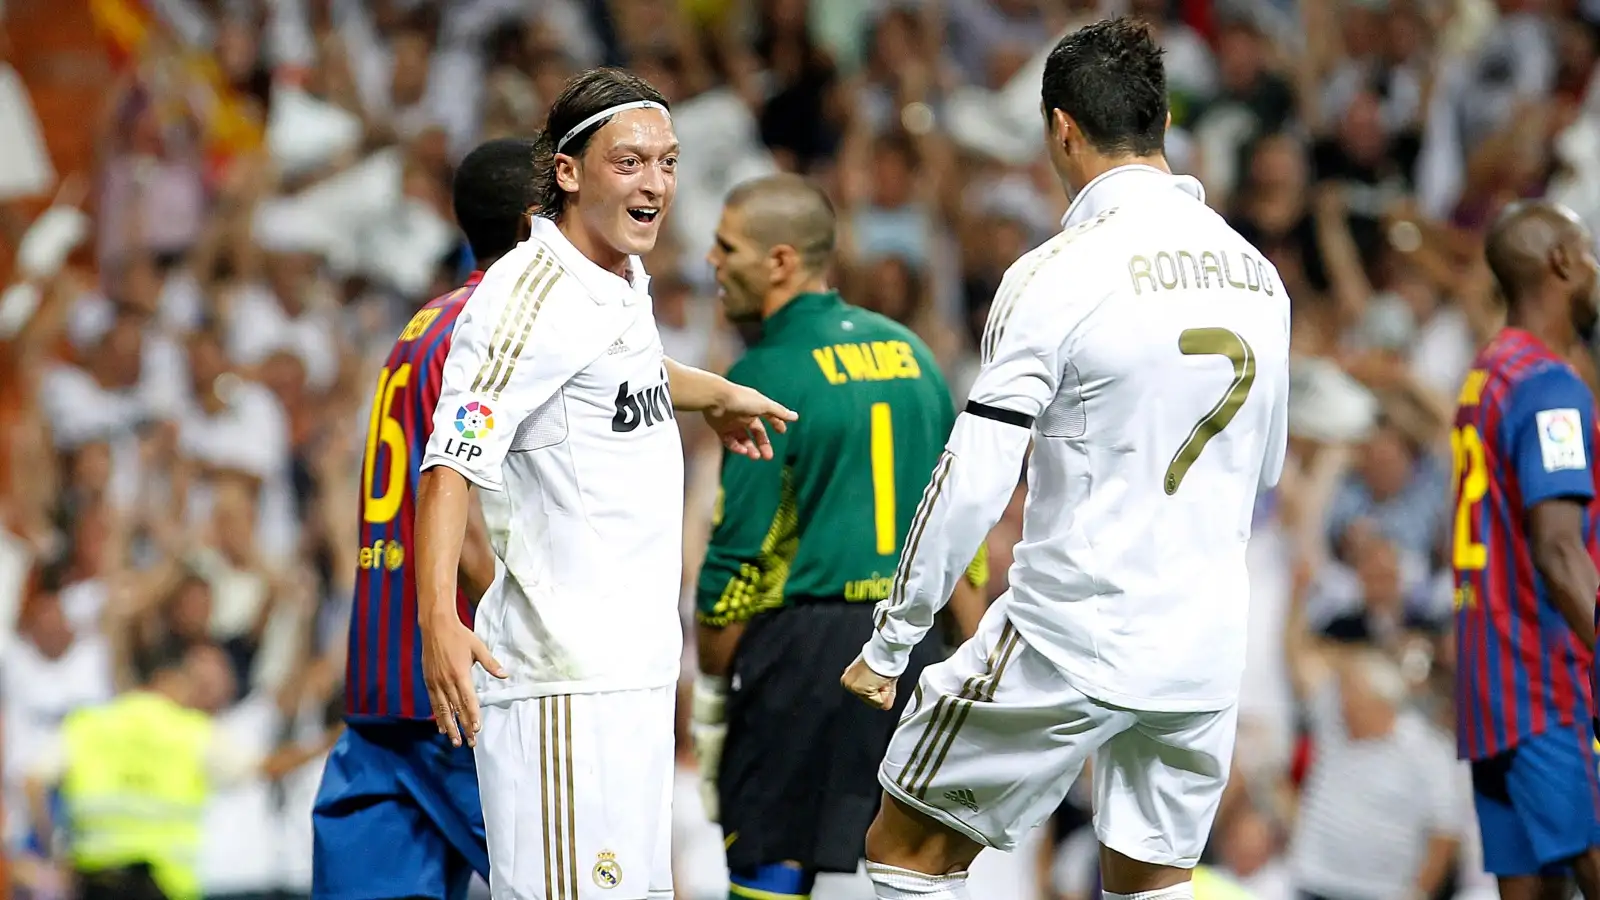 Mesut Ozil and Cristiano Ronaldo celebrate a goal